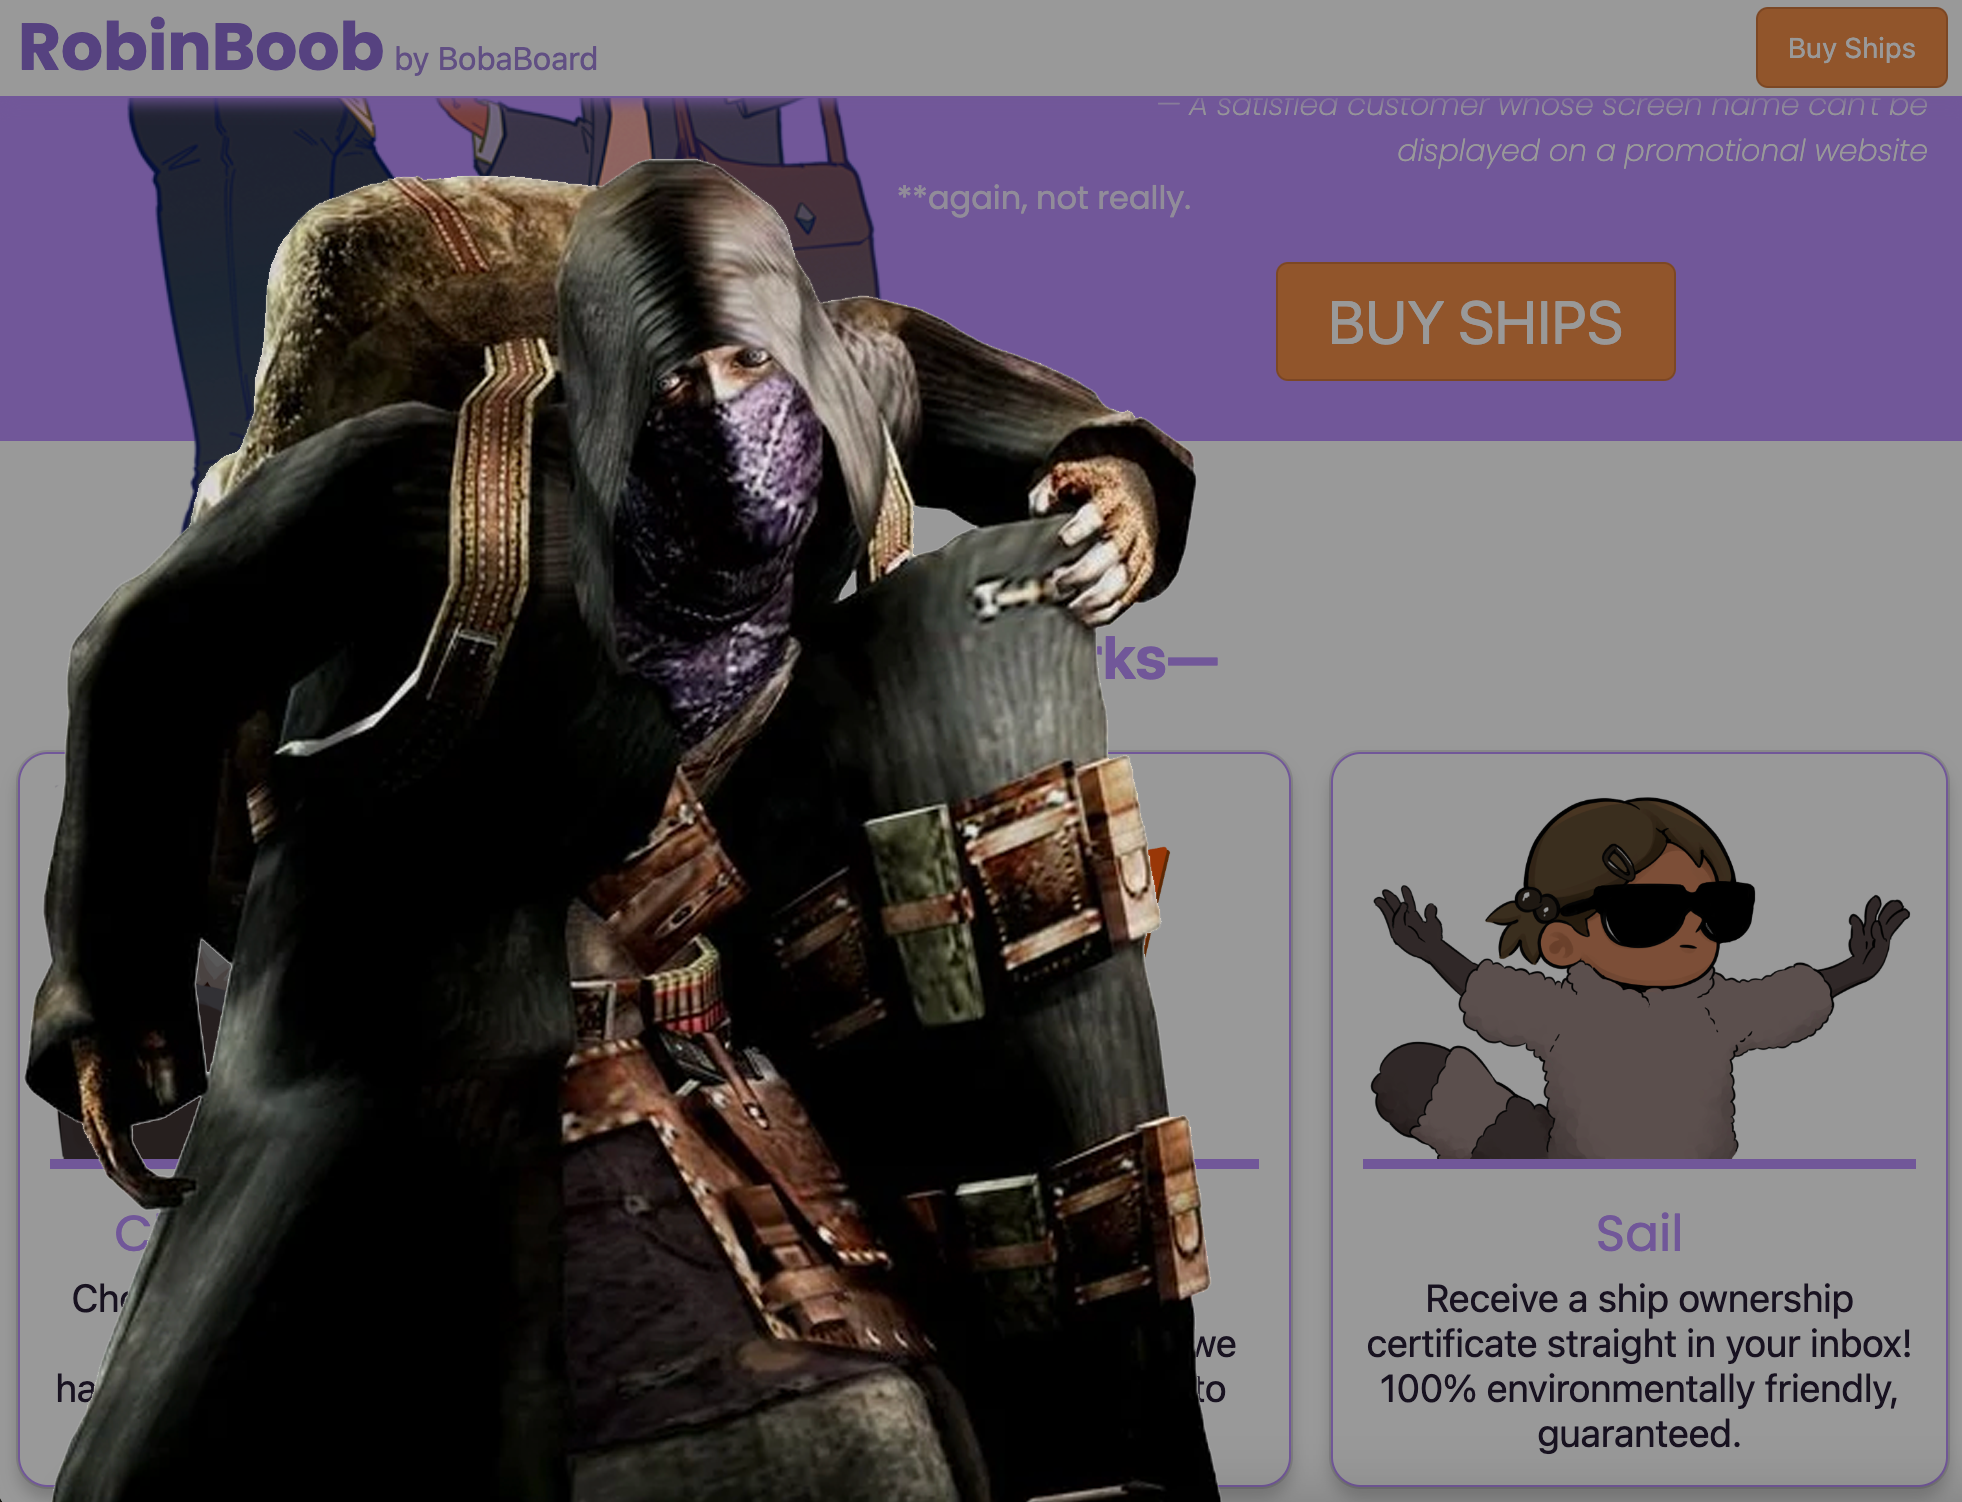 The resident evil merchant meme, on top of RobinBoob's website.